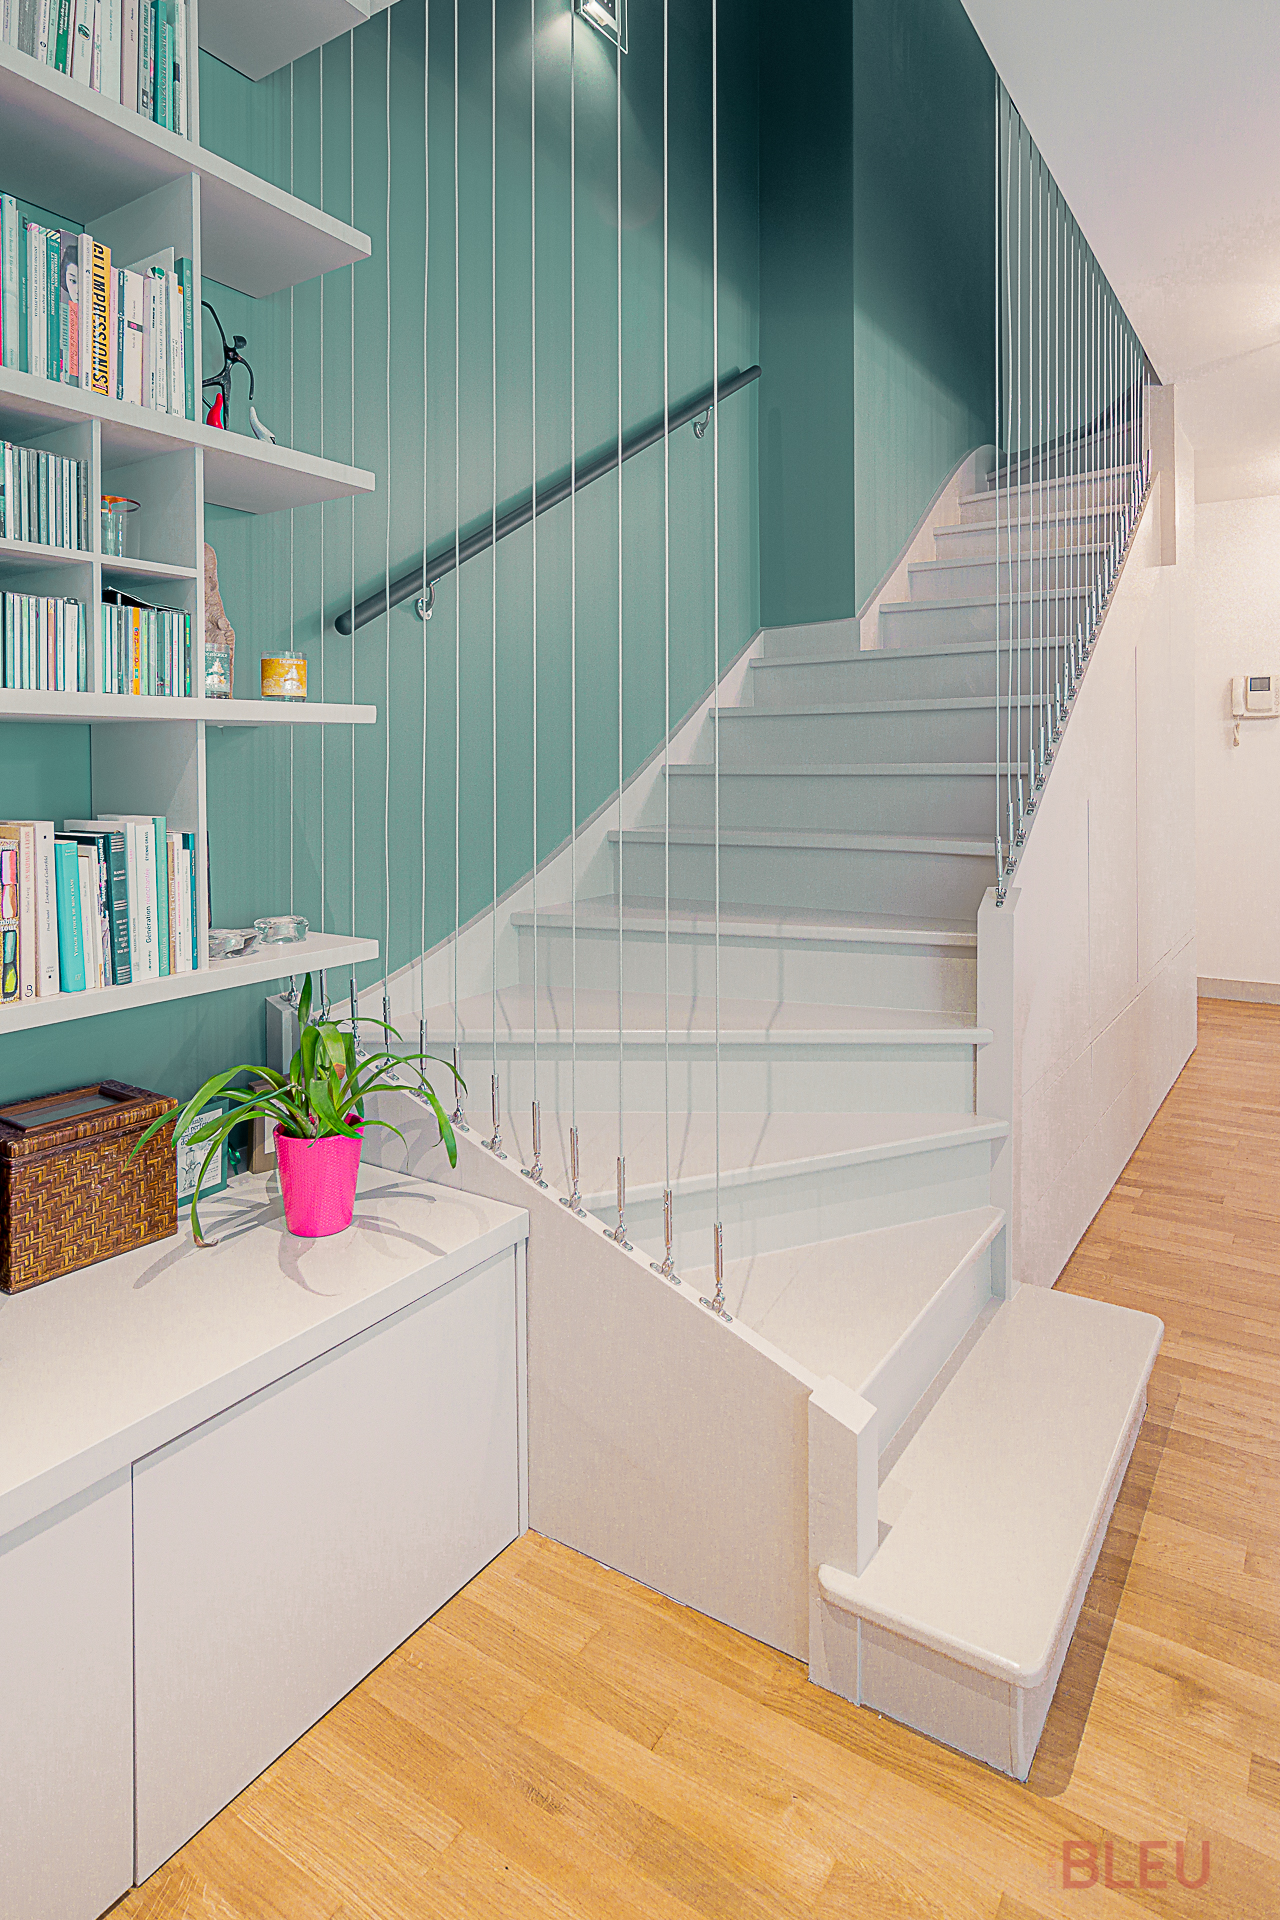 Espace de vie moderne avec escalier blanc, mur vert foncé, bibliothèque intégrée et parquet clair - Projet de rénovation d'appartement duplex à Paris par notre agence d'architecture intérieur